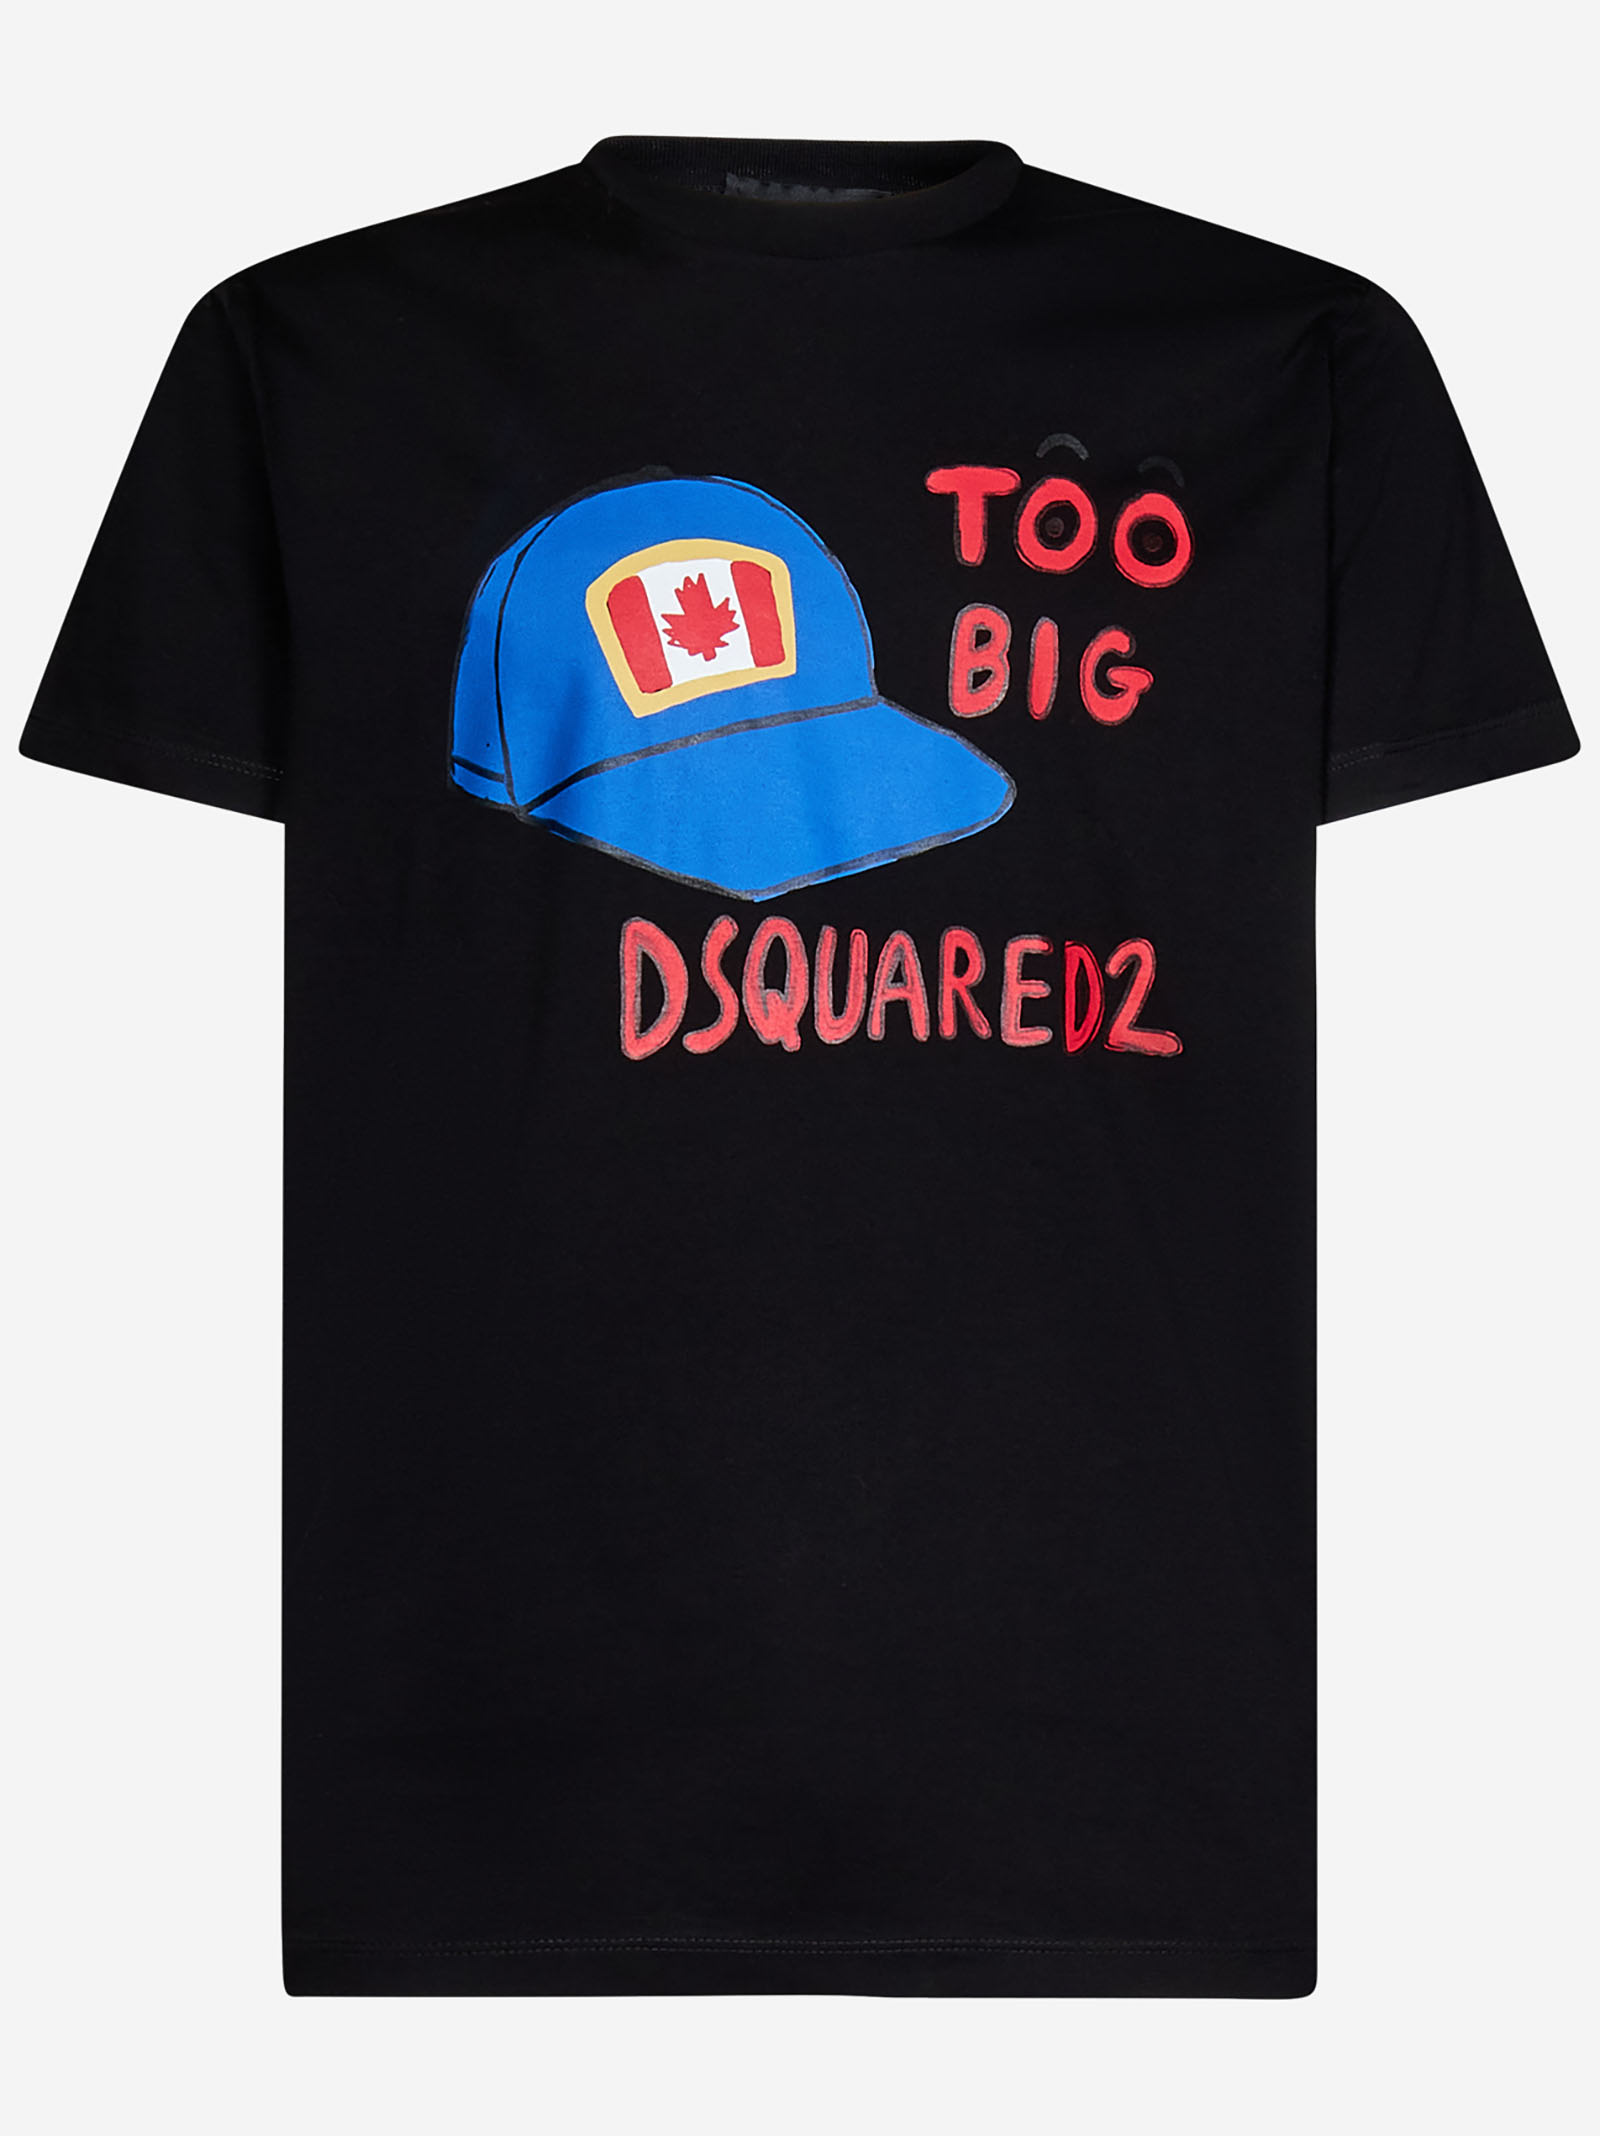 Dsquared2 Too Big Cool T-shirt